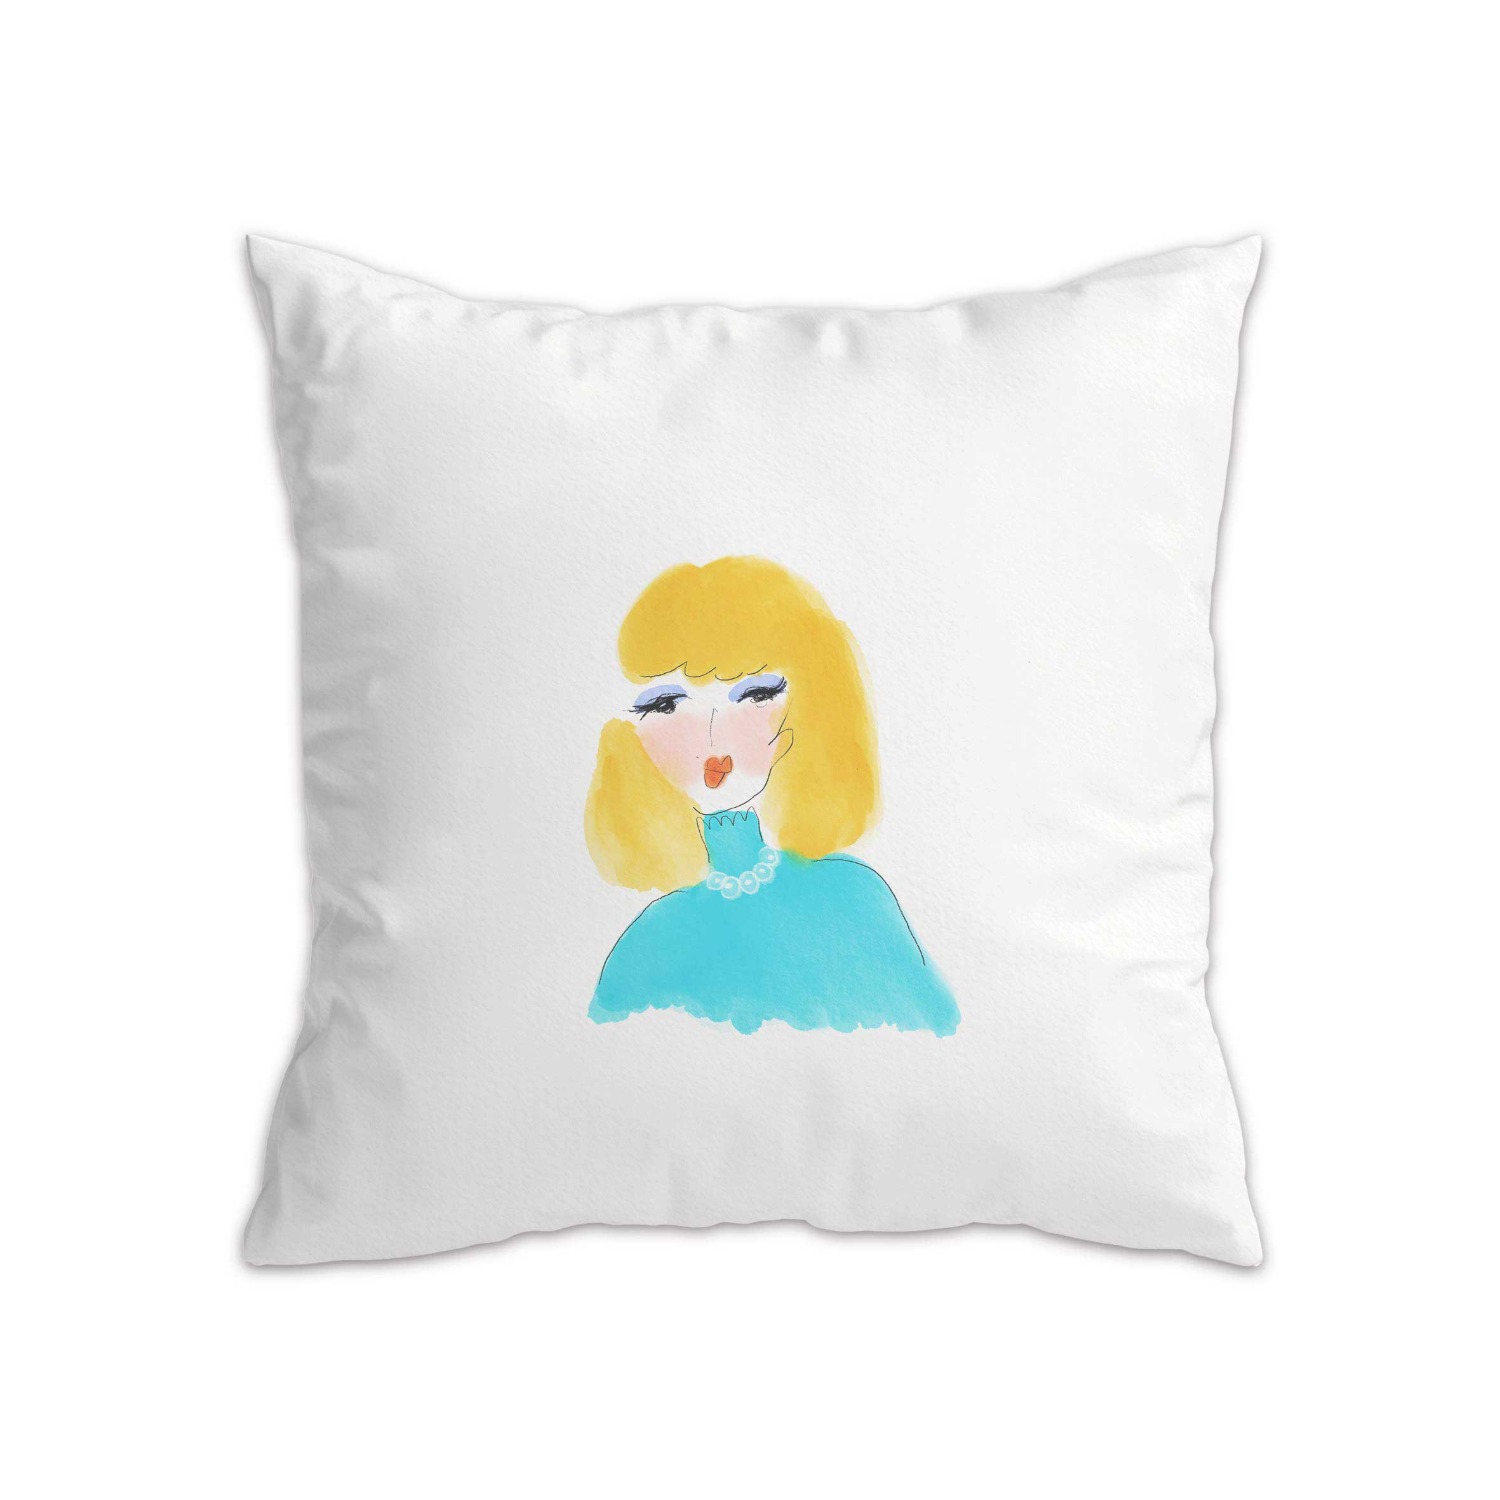 Joy cushion